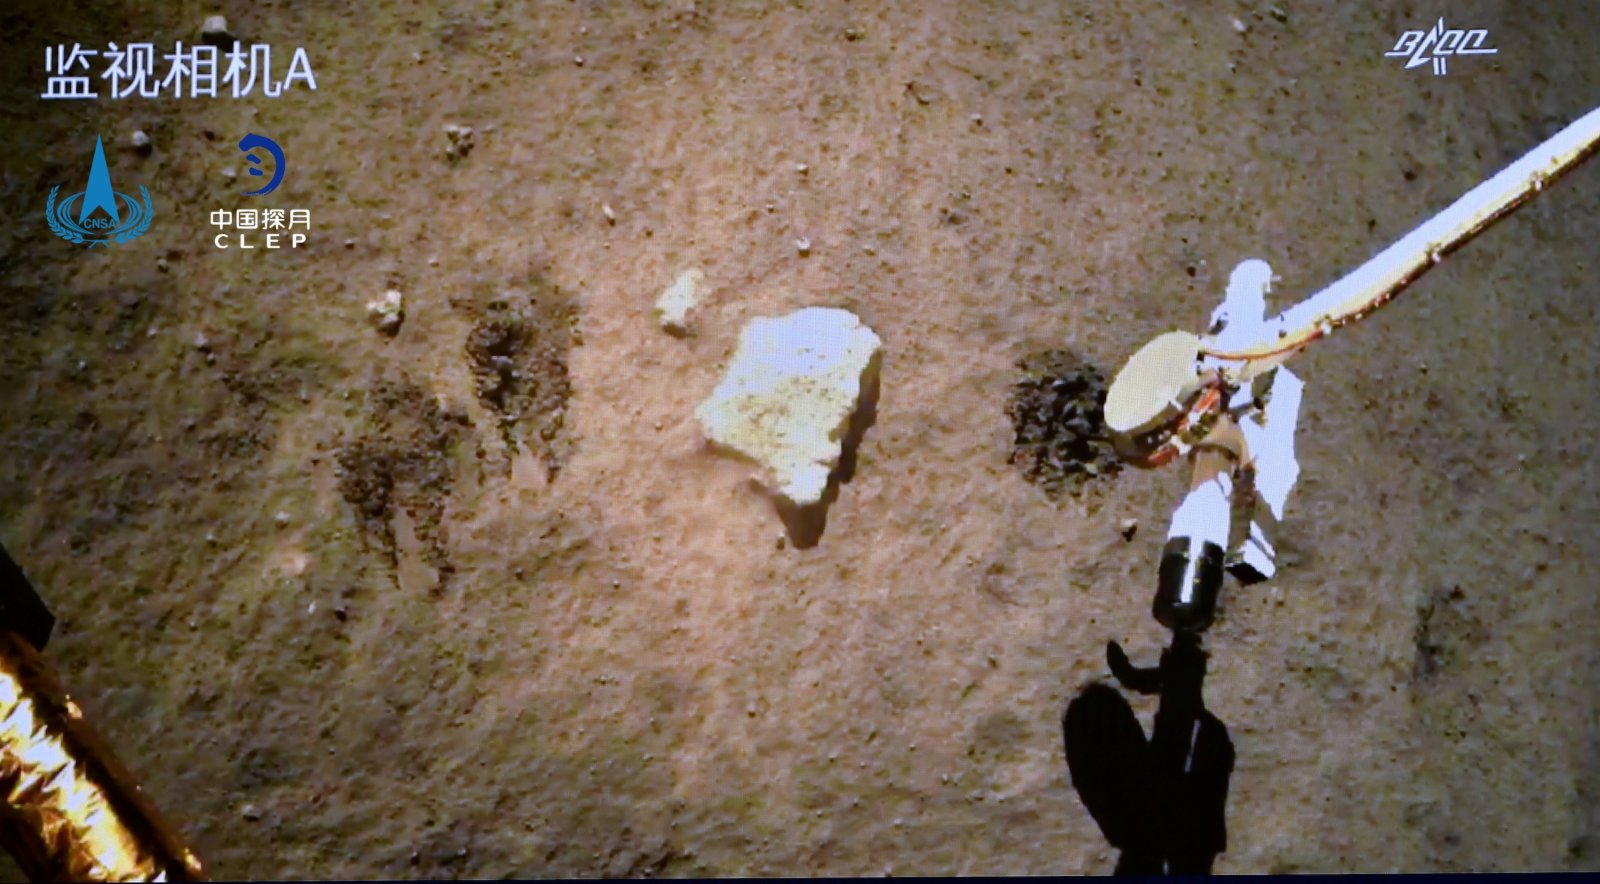 圖為嫦娥五號探測器在月球表面自動採樣。(國家航天局供圖)